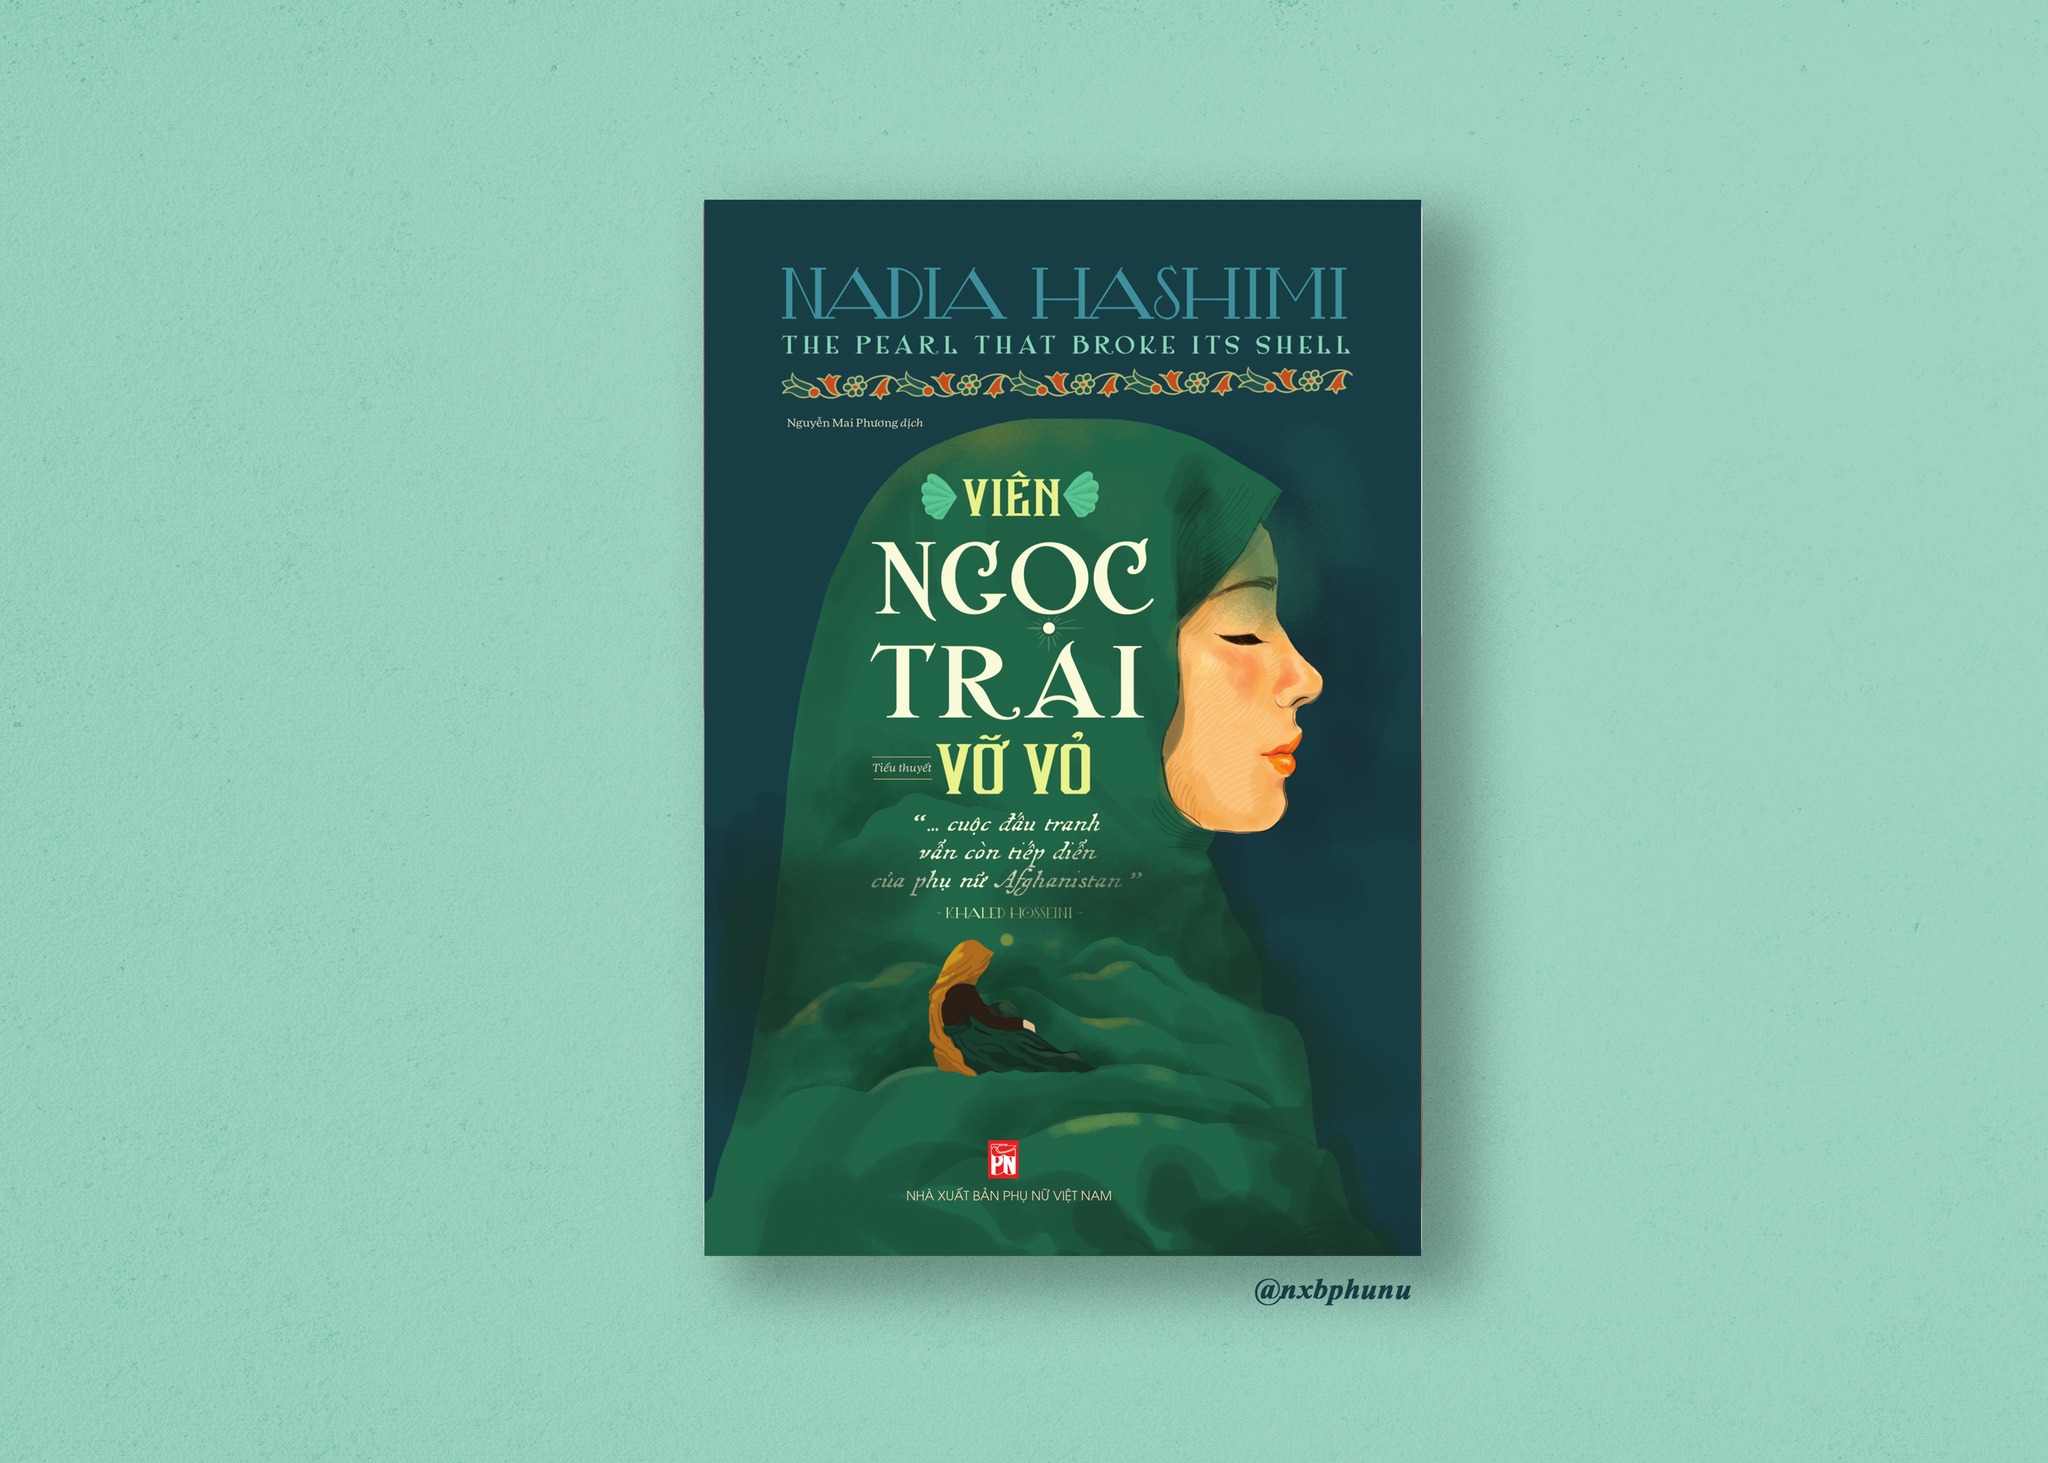 VIÊN NGỌC TRAI VỠ VỎ –  The Pearl That Broke Its Shell - Nadia Hashimi – NXB Phụ Nữ